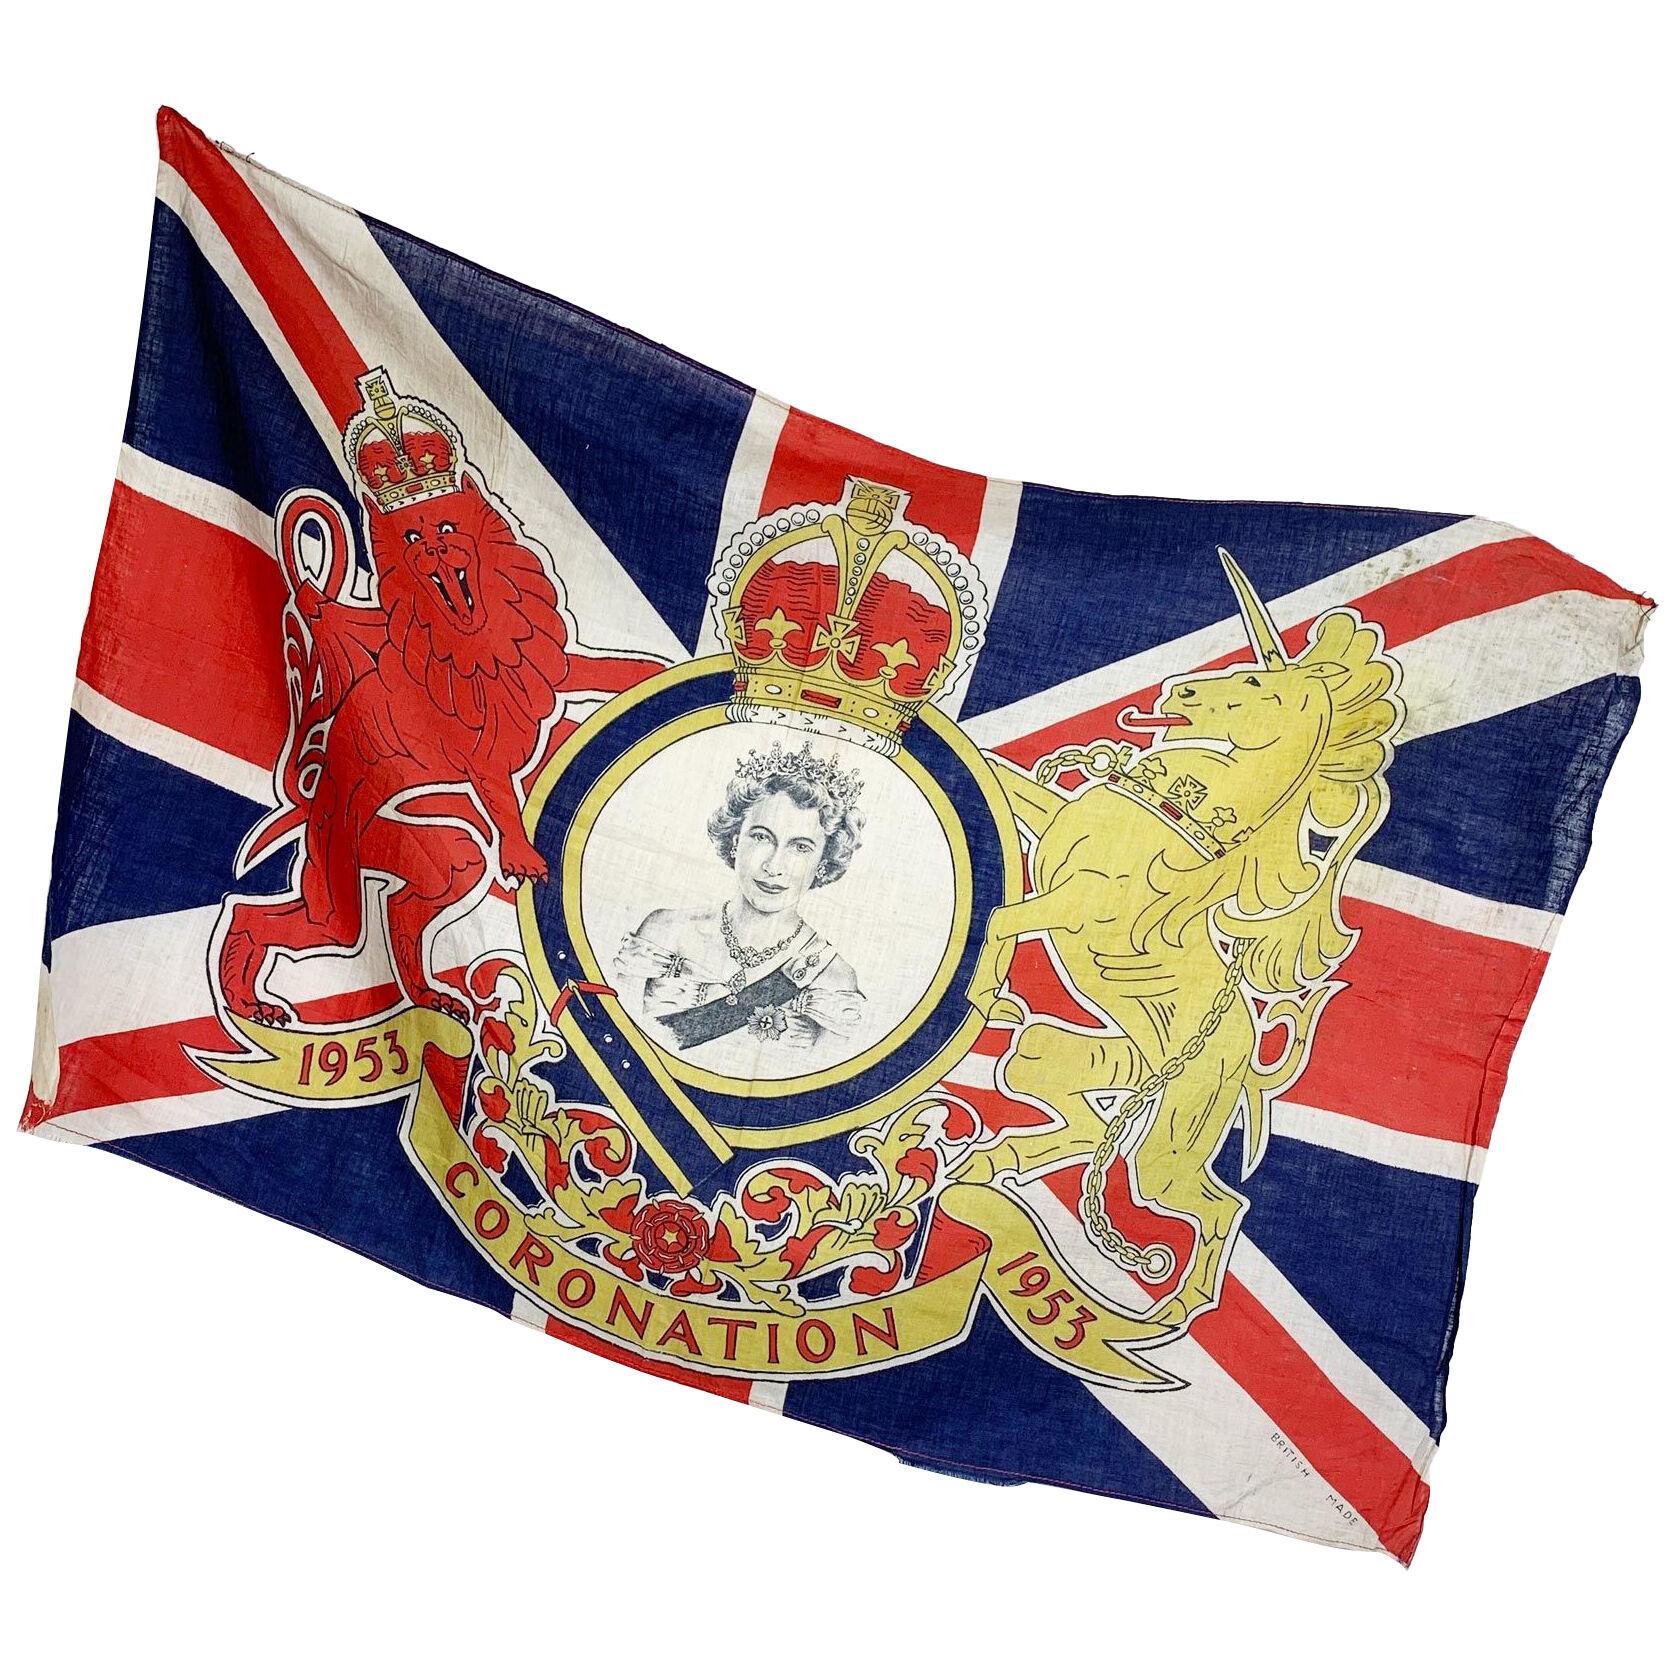  Queen Elizabeth ll 1953 Royal Coronation Flag